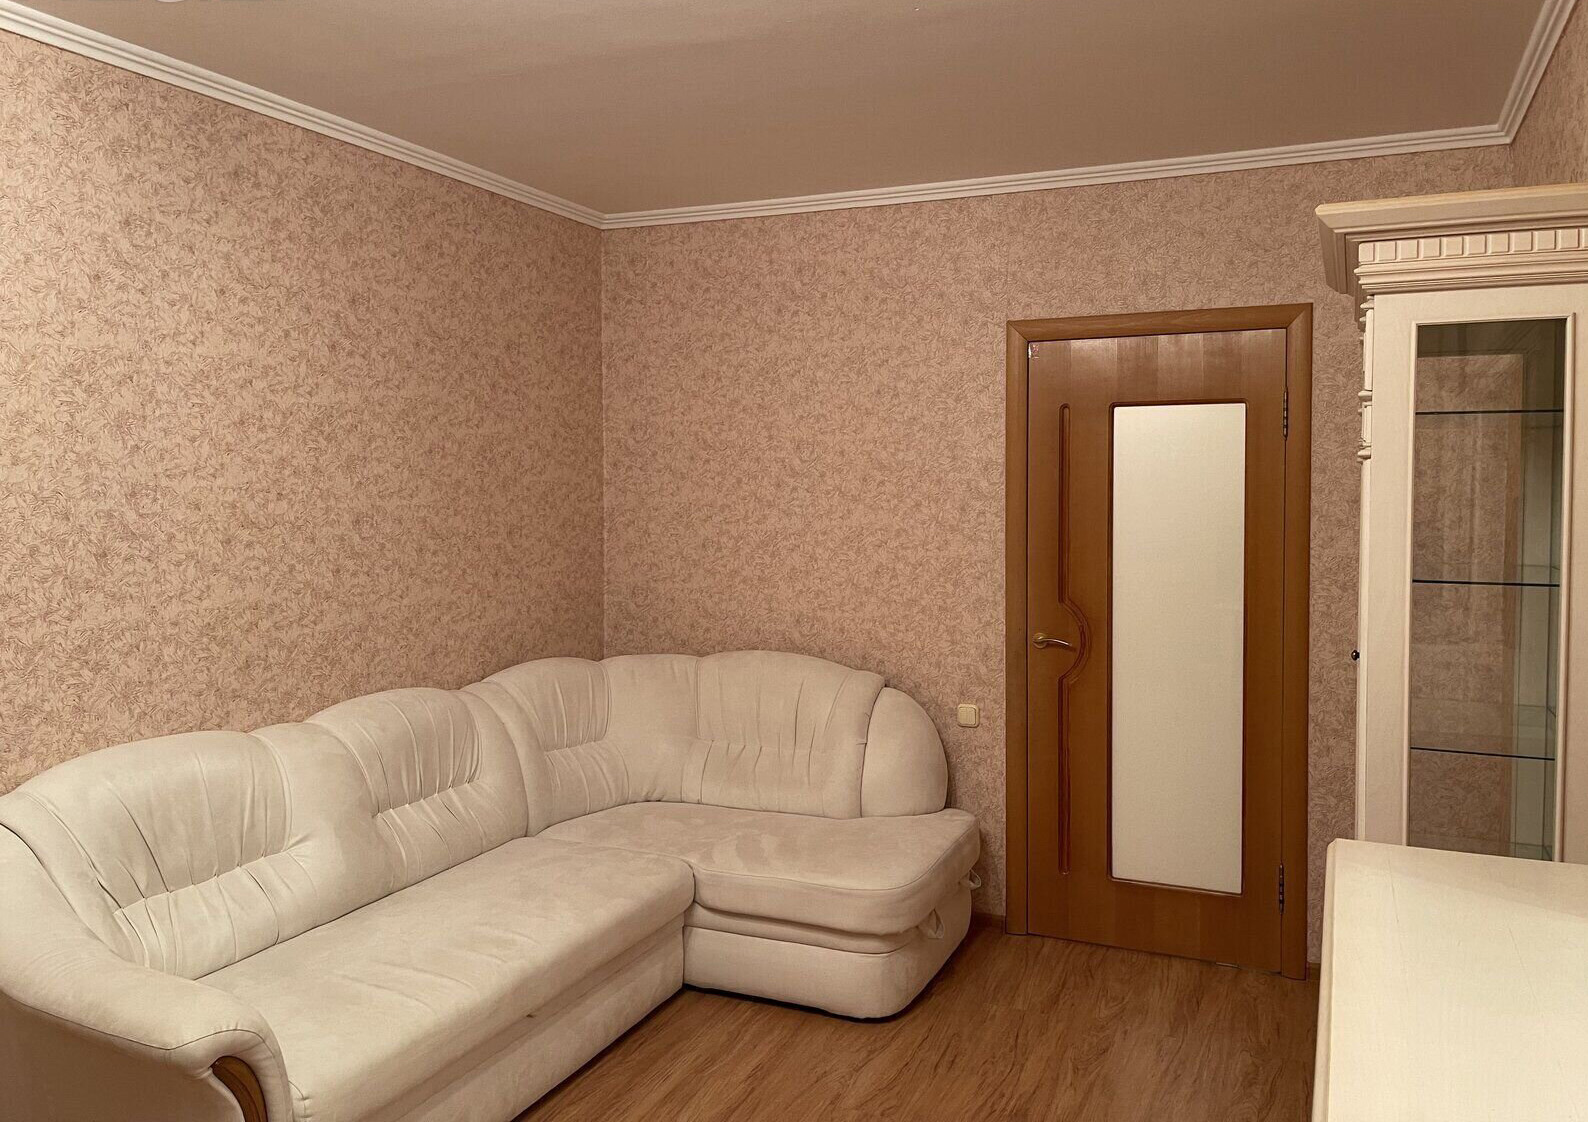 Сдам 3-х комнатную квартиру с мебелью и техникой на длительный срок в спальном районе. - фотография